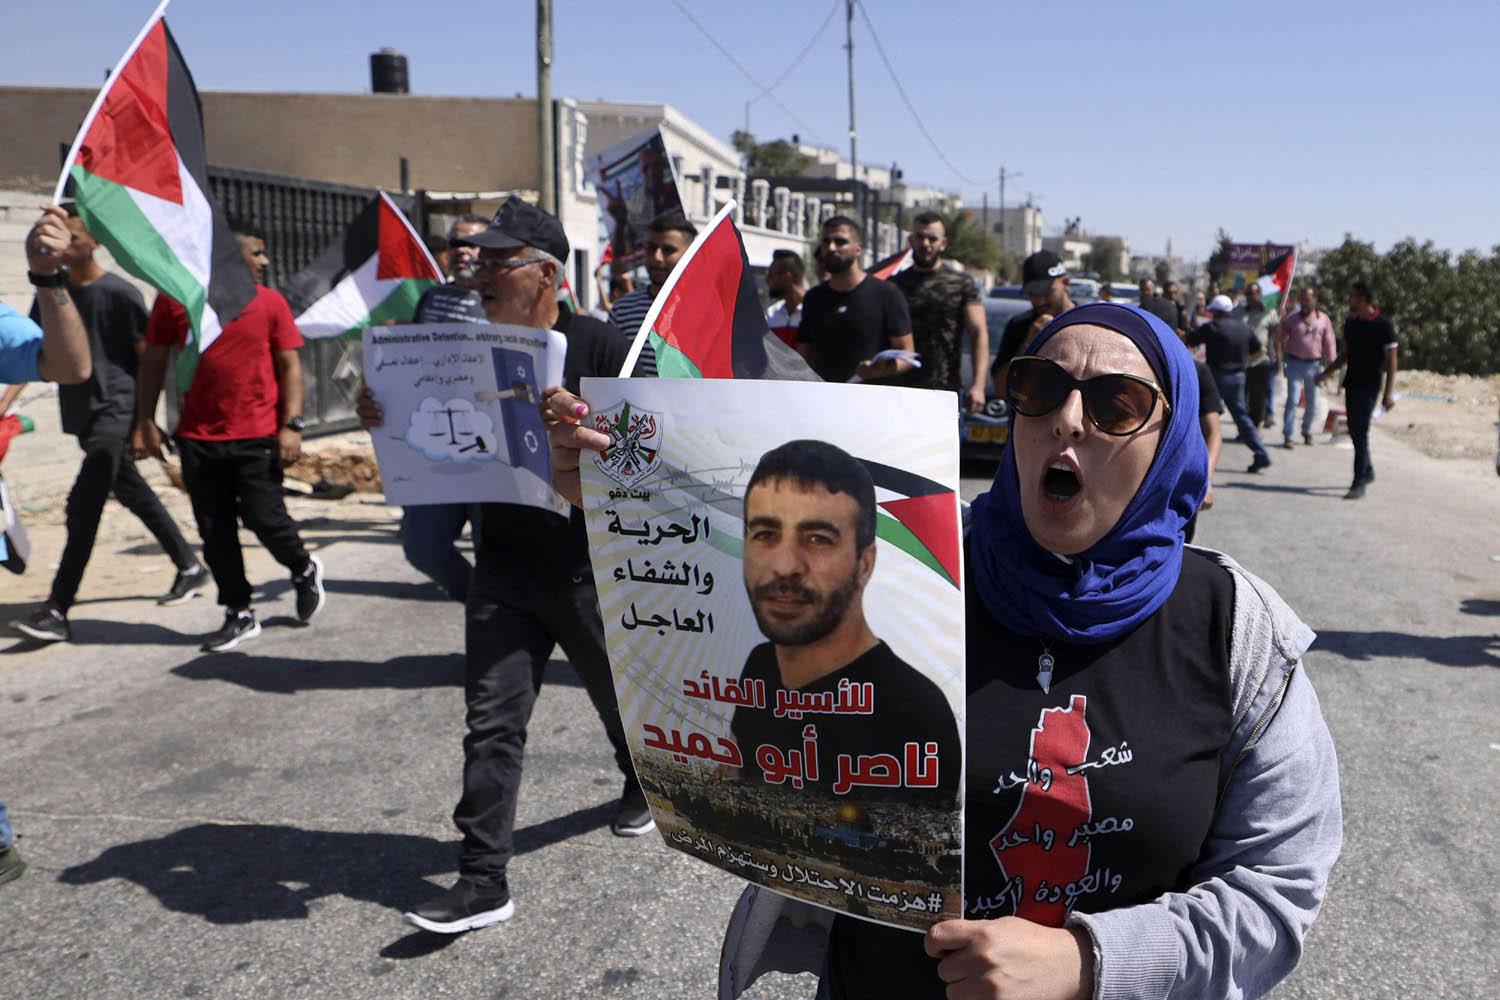 تظاهرة فلسطينية في رام الله تطالب باطلاق سراح الأسرى